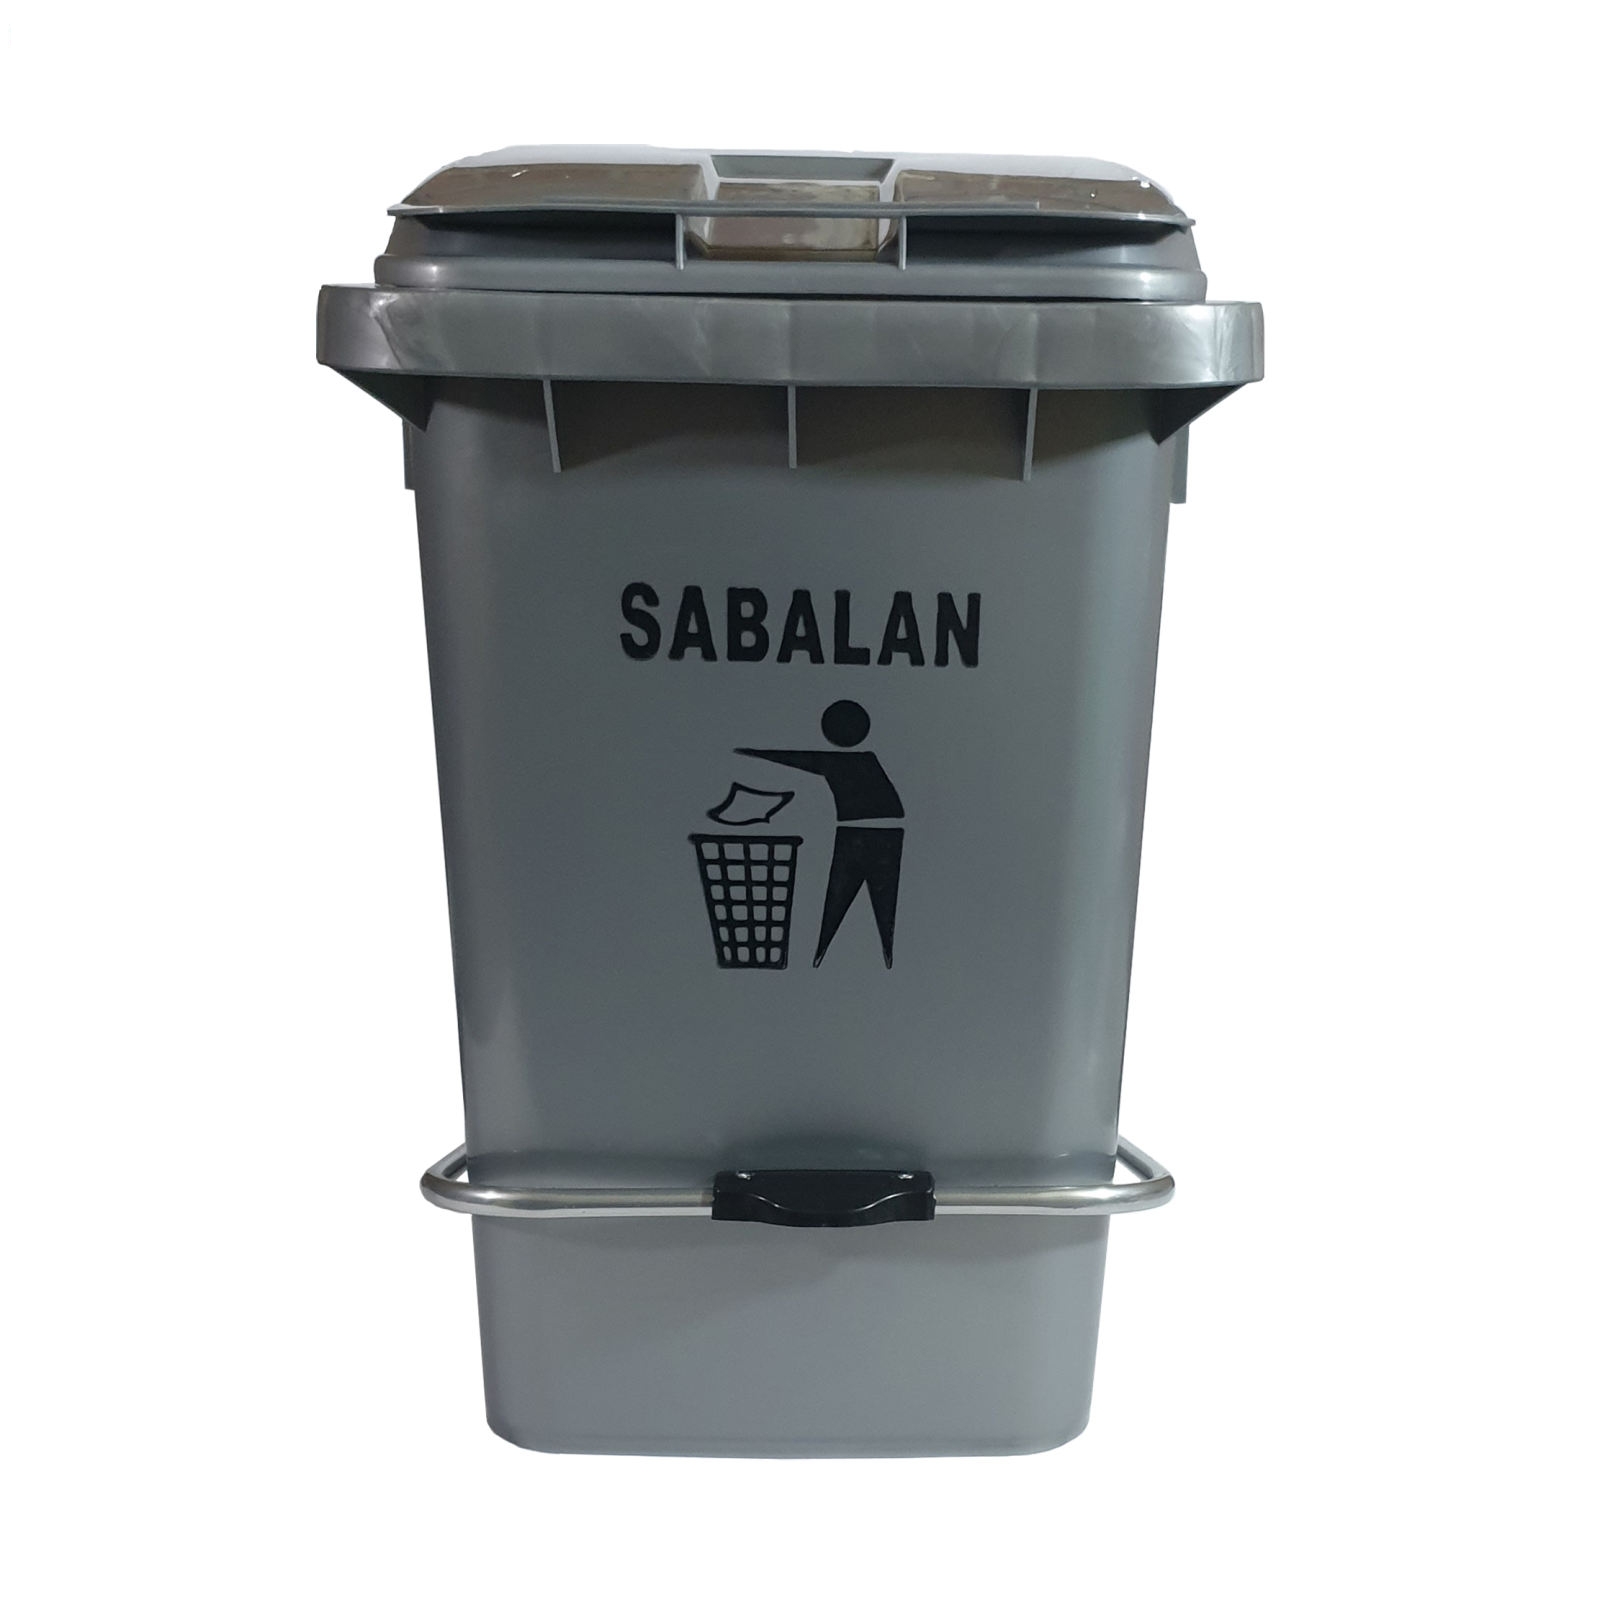 سطل زباله سبلان مدل پدالی کد 60liter 3482053